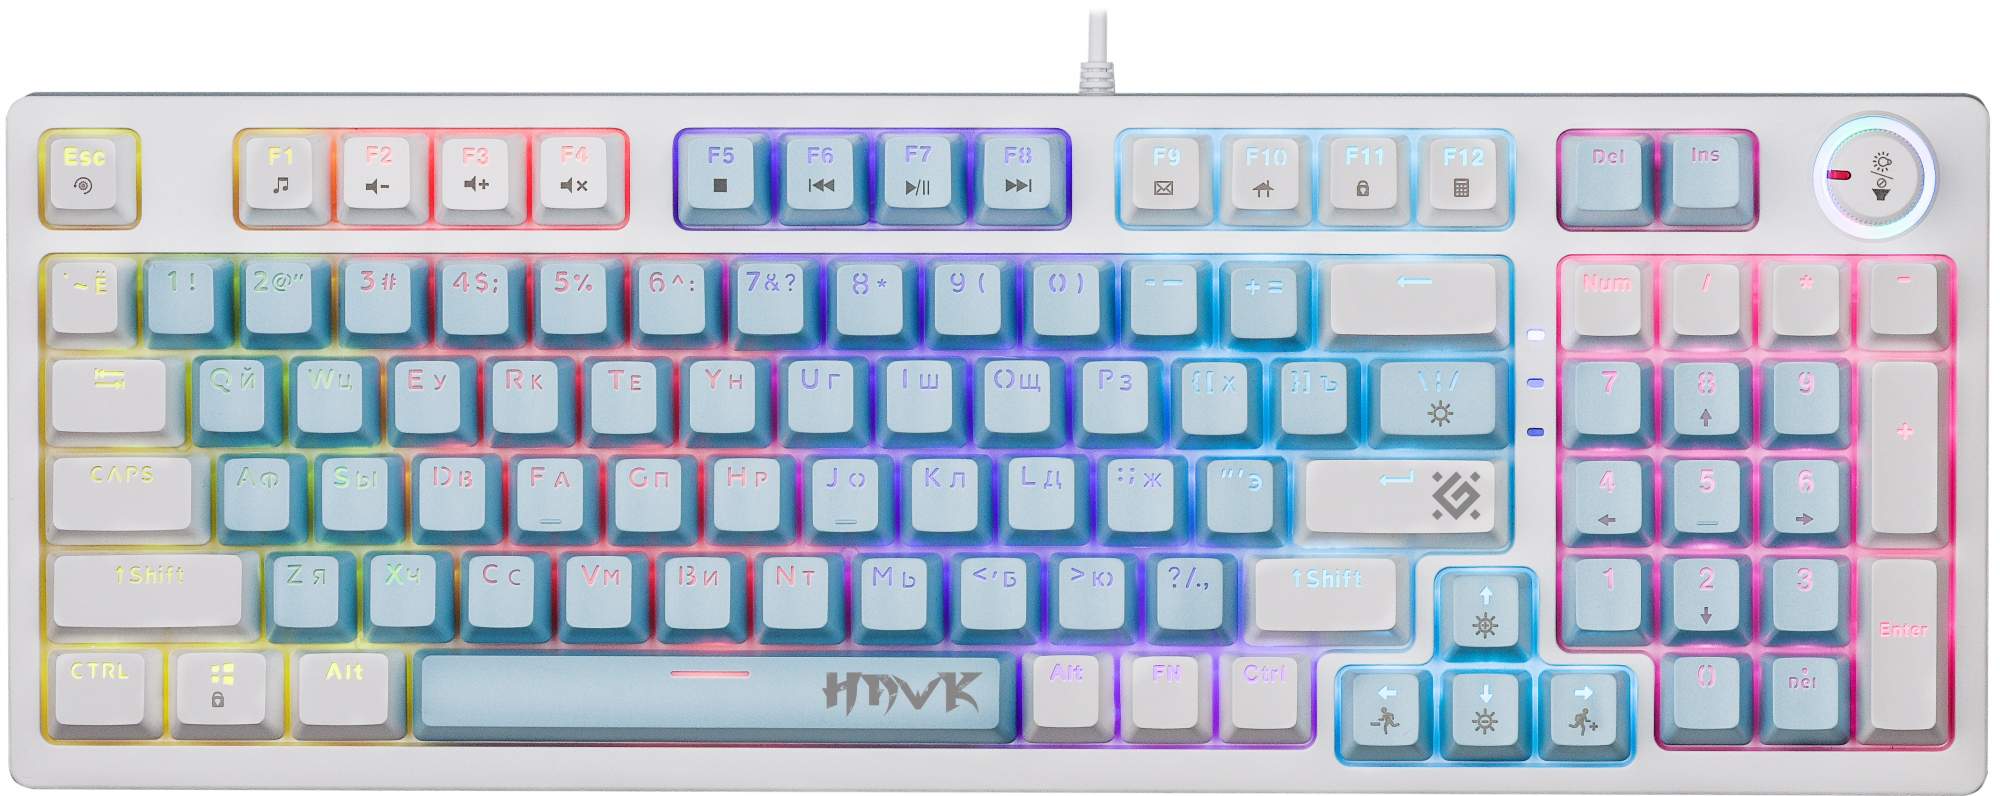 Механическая клавиатура Defender Hawk GK-418 RU, купить в Москве, цены в интернет-магазинах на Мегамаркет